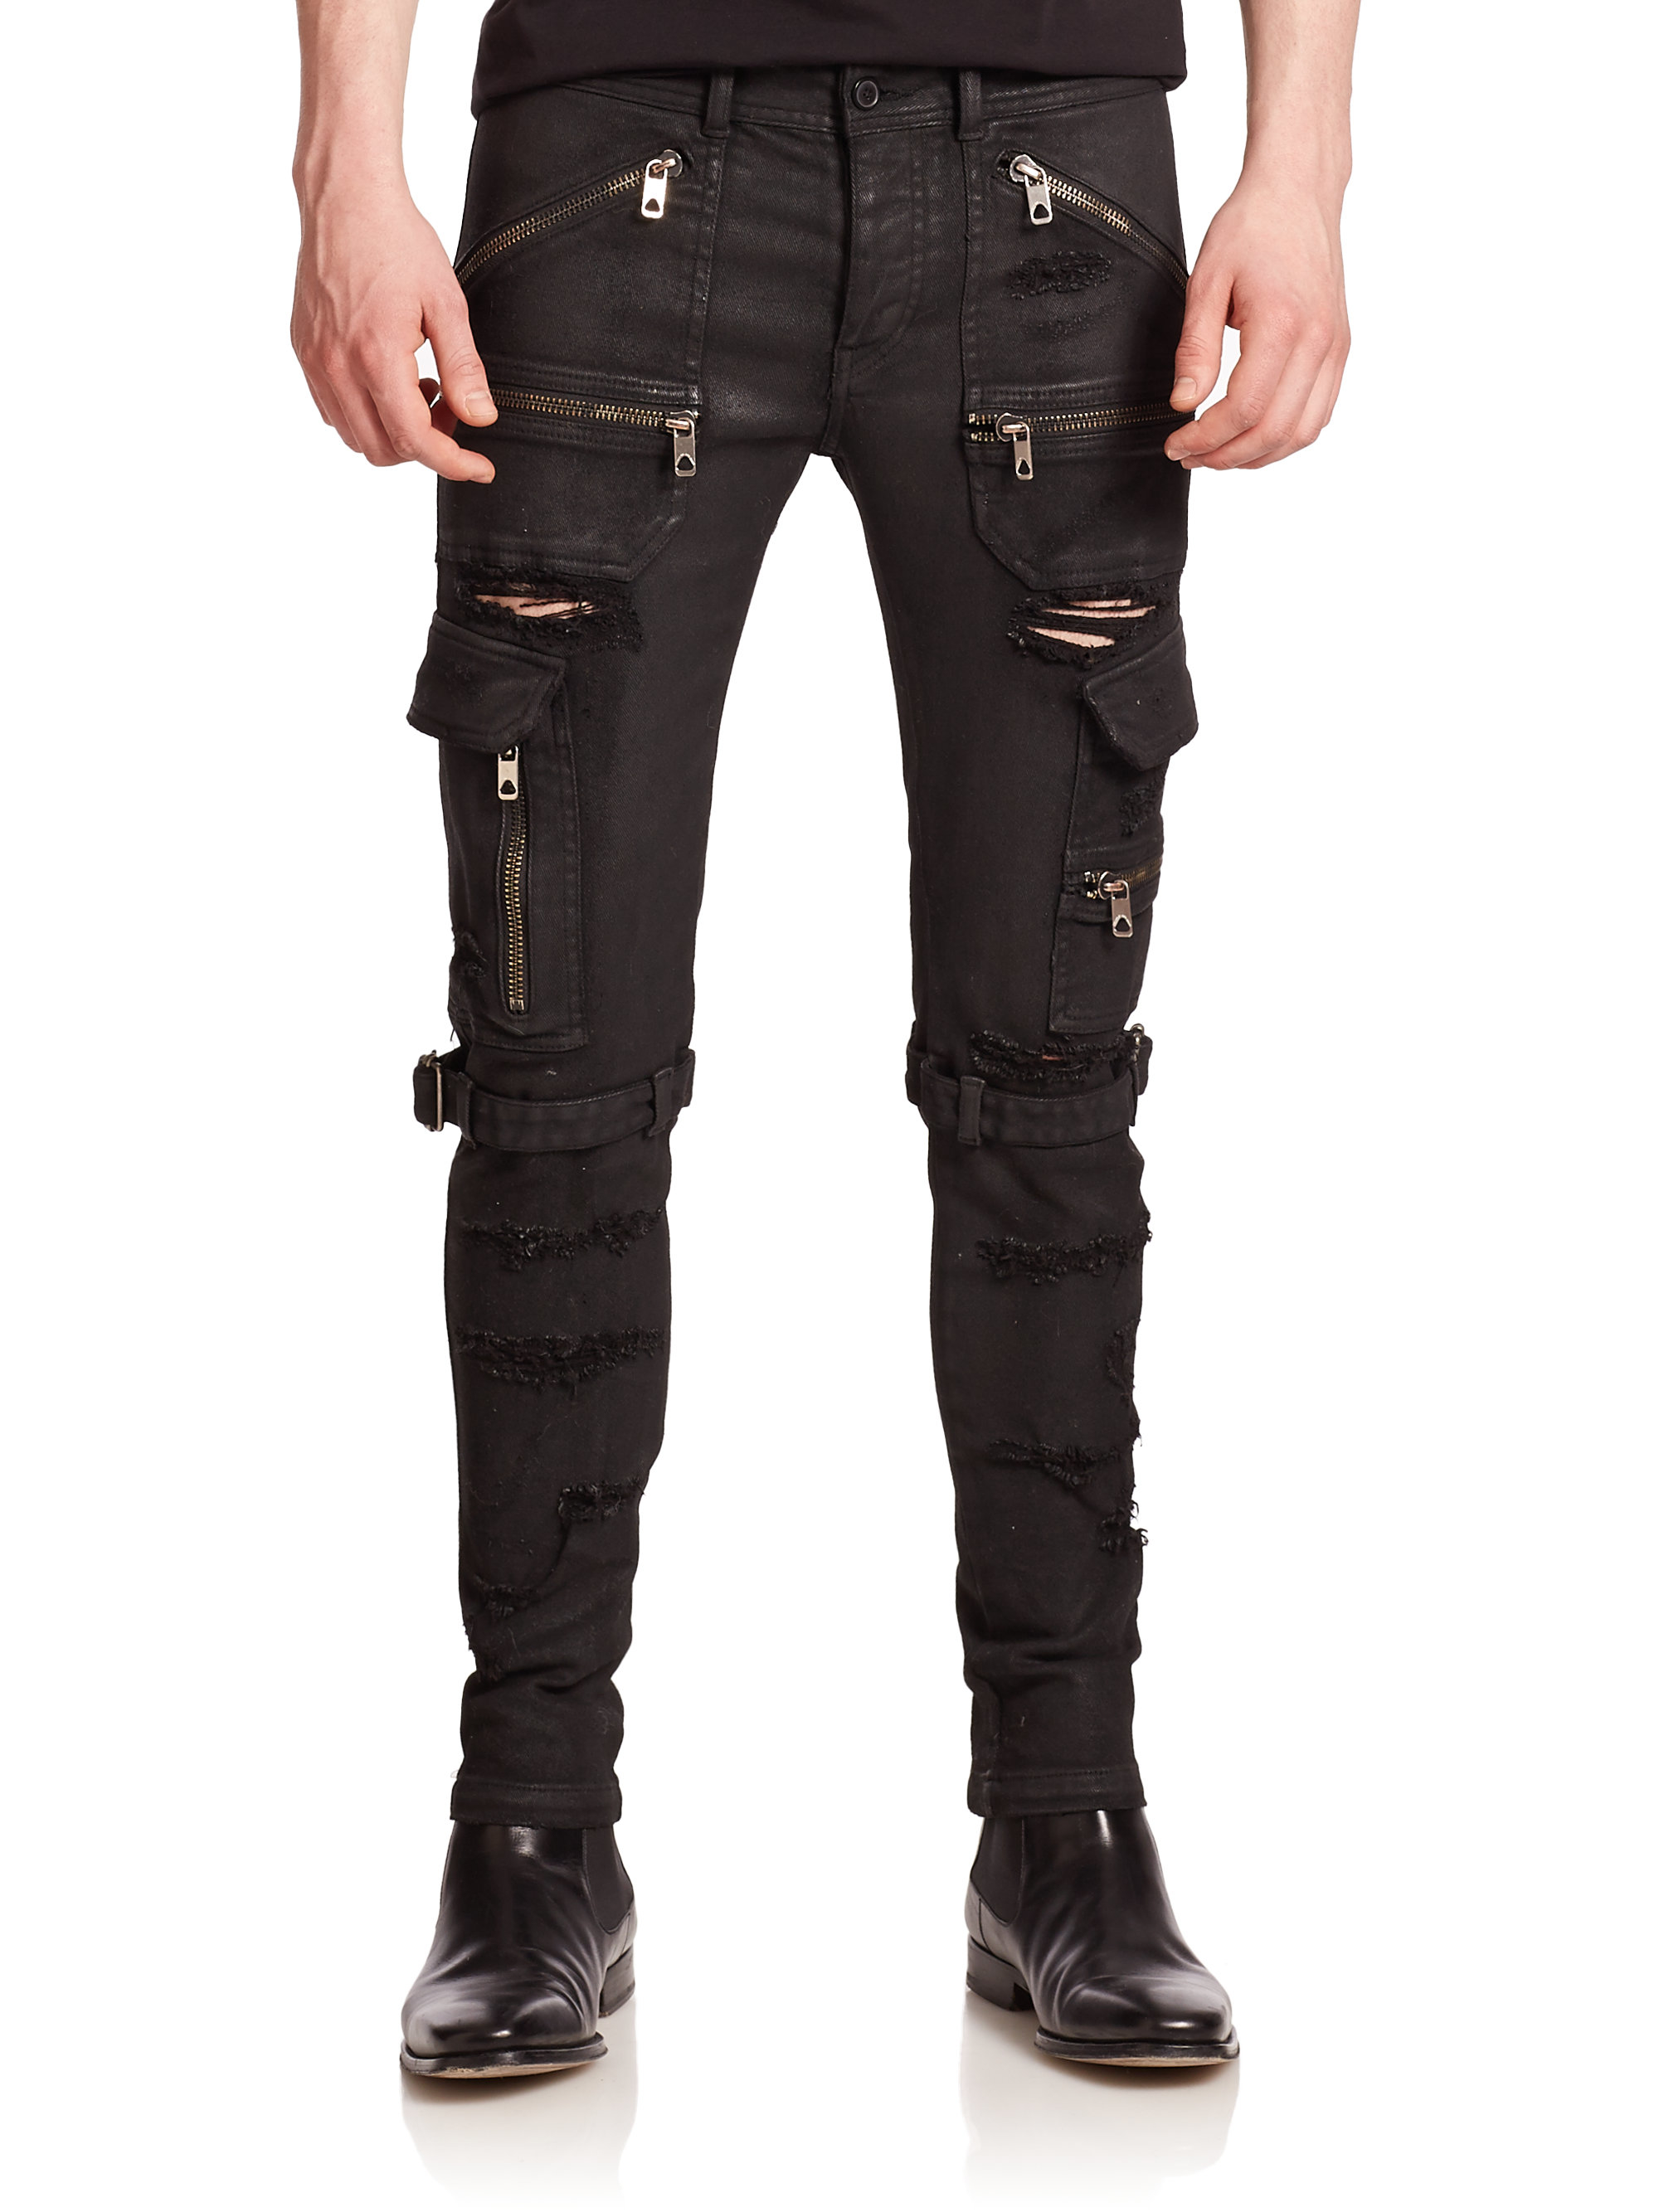 Diesel Black Gold Straight-leg Cargo Jeans in Black for Men - Lyst